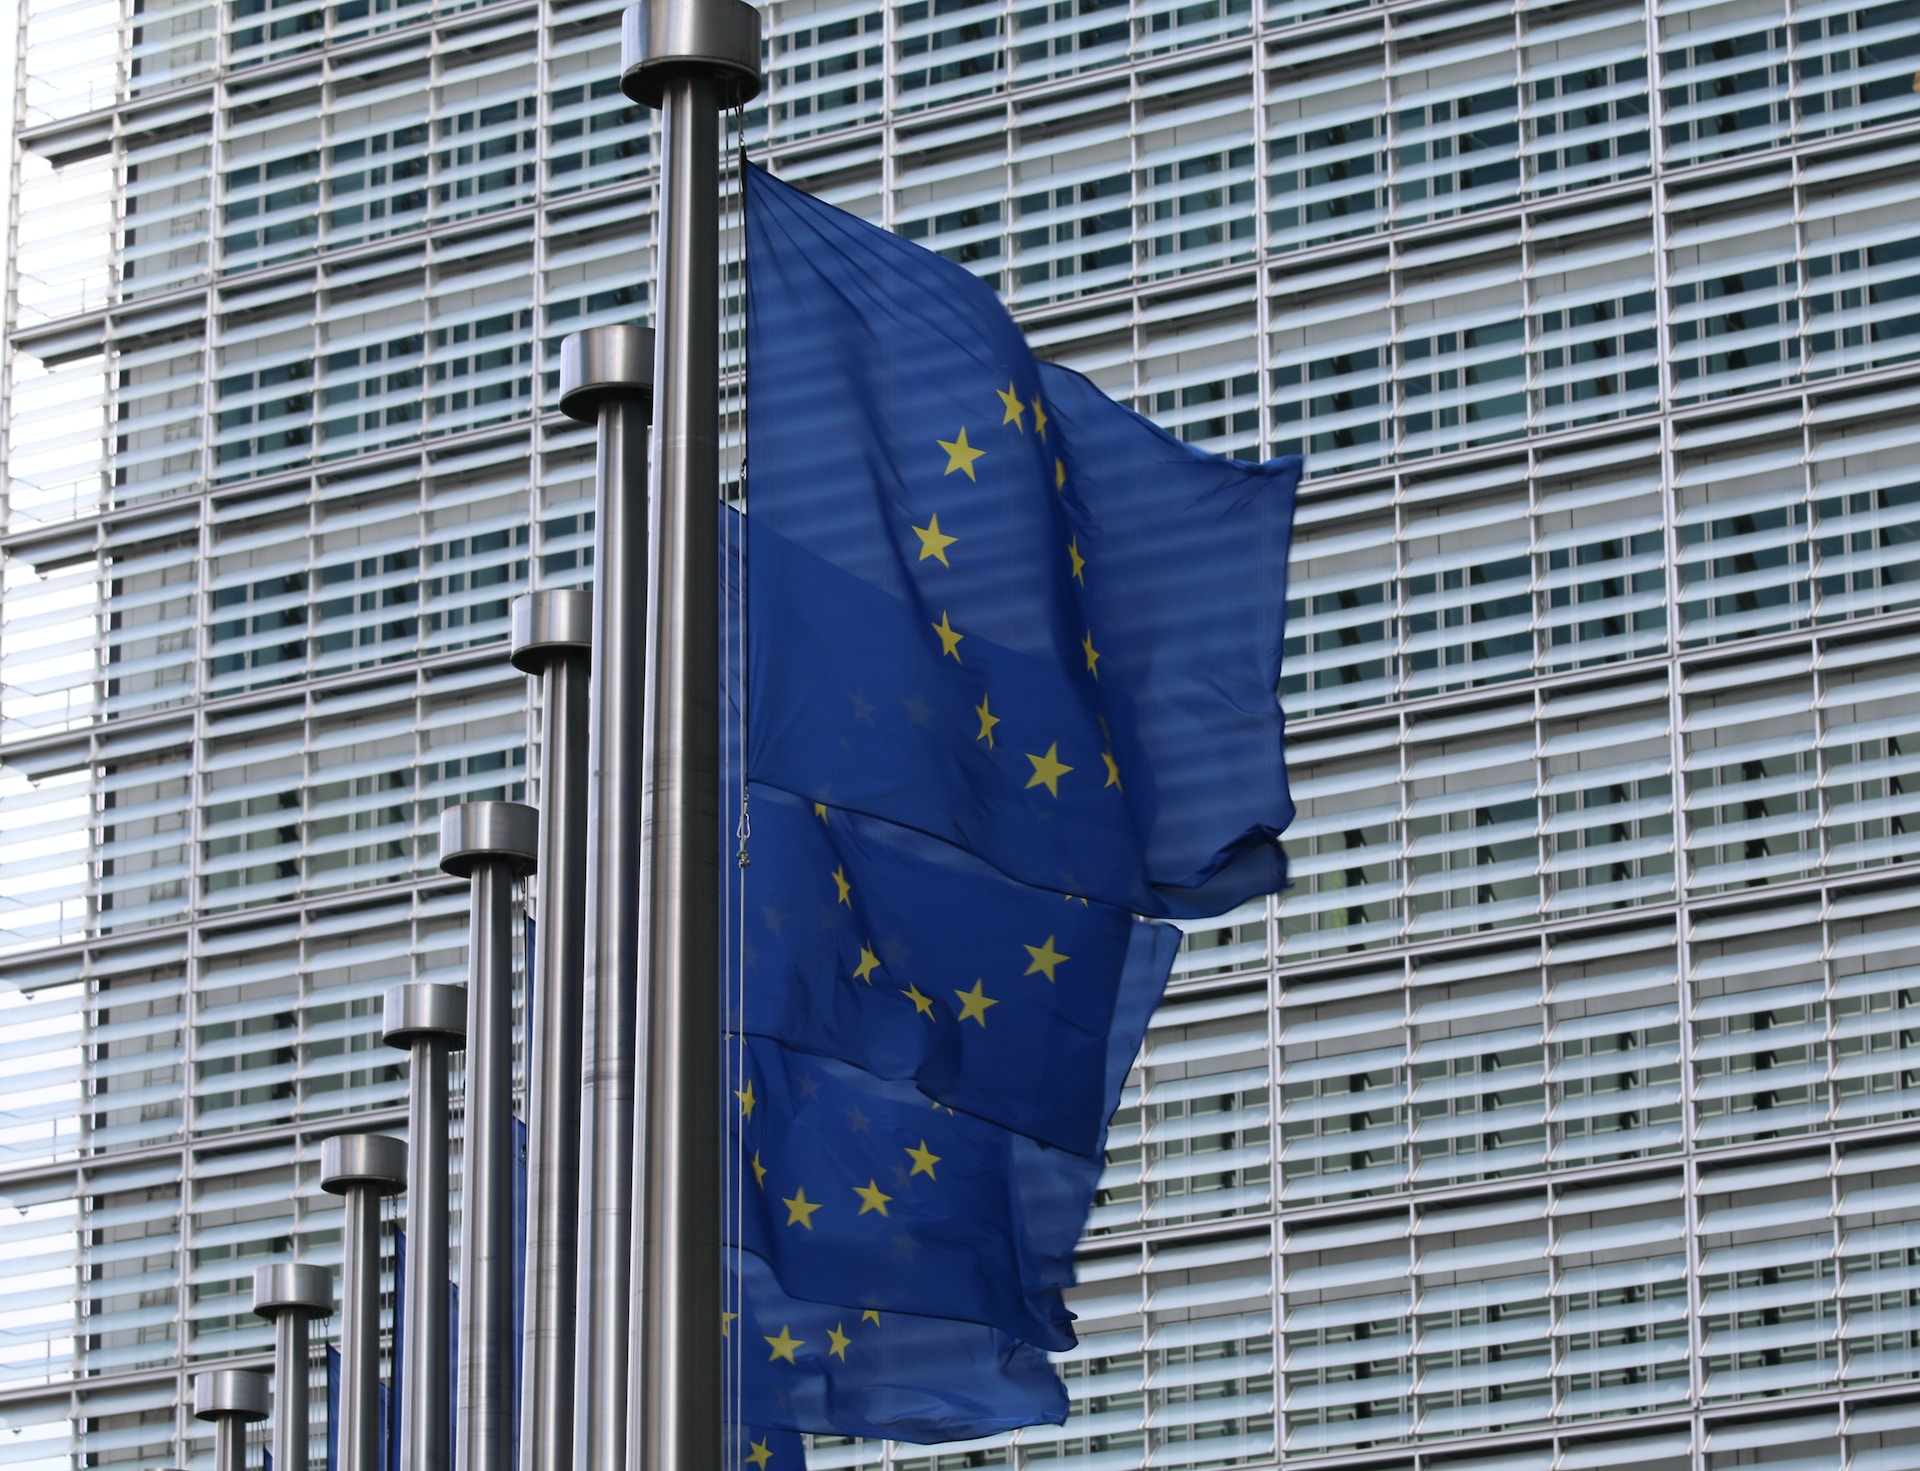 EU-Flaggen am Fahnenmast vor Bürokomplex